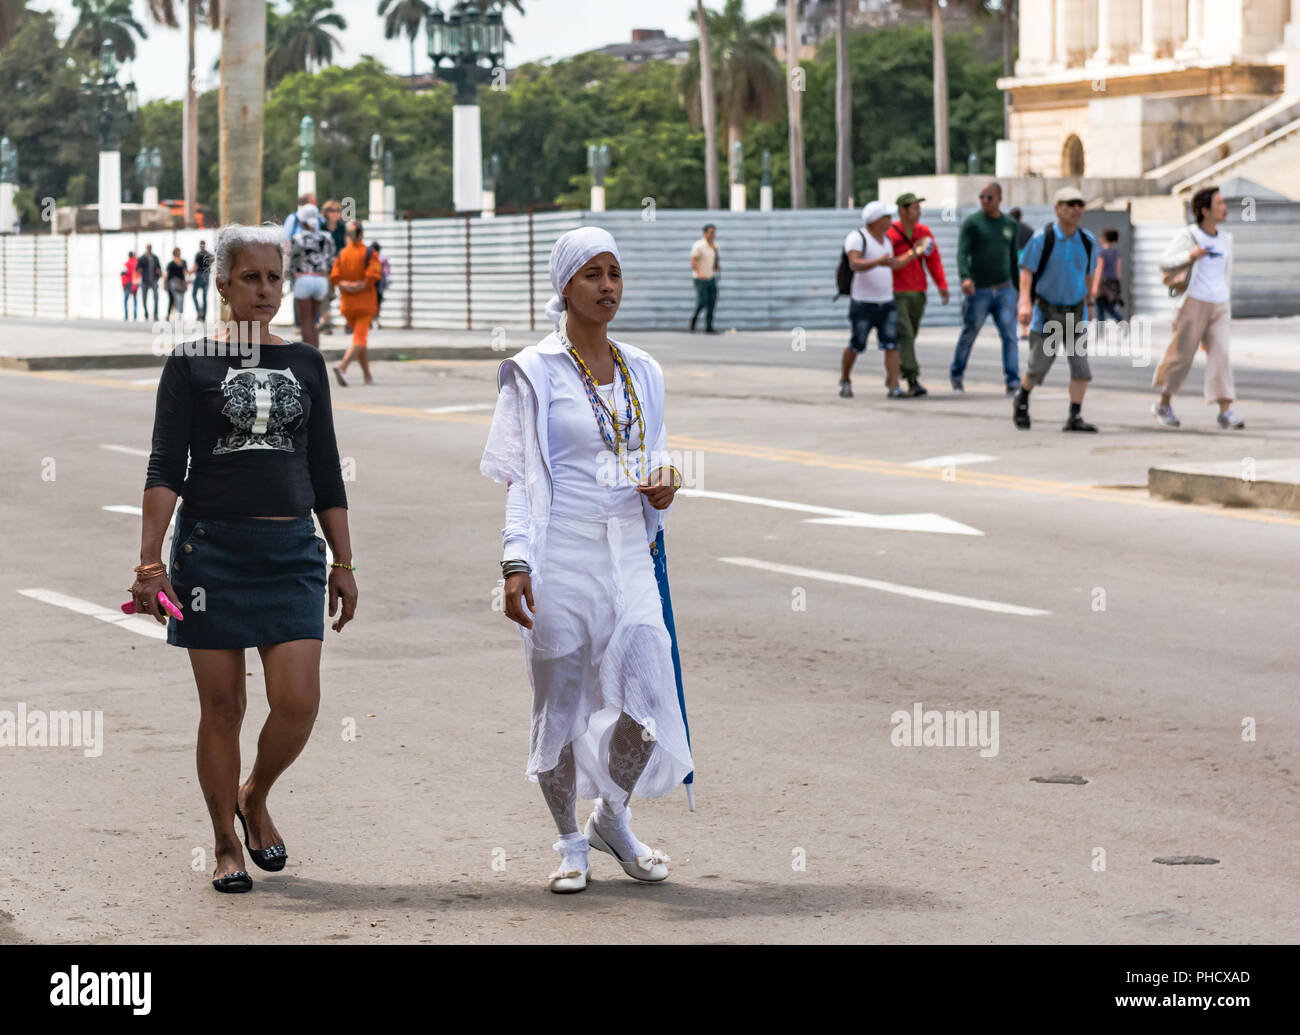 Riconoscibili perché indossa testa a punta bianca, questa donna è un nuovo avvio nella religione cubana della Santeria. Foto Stock